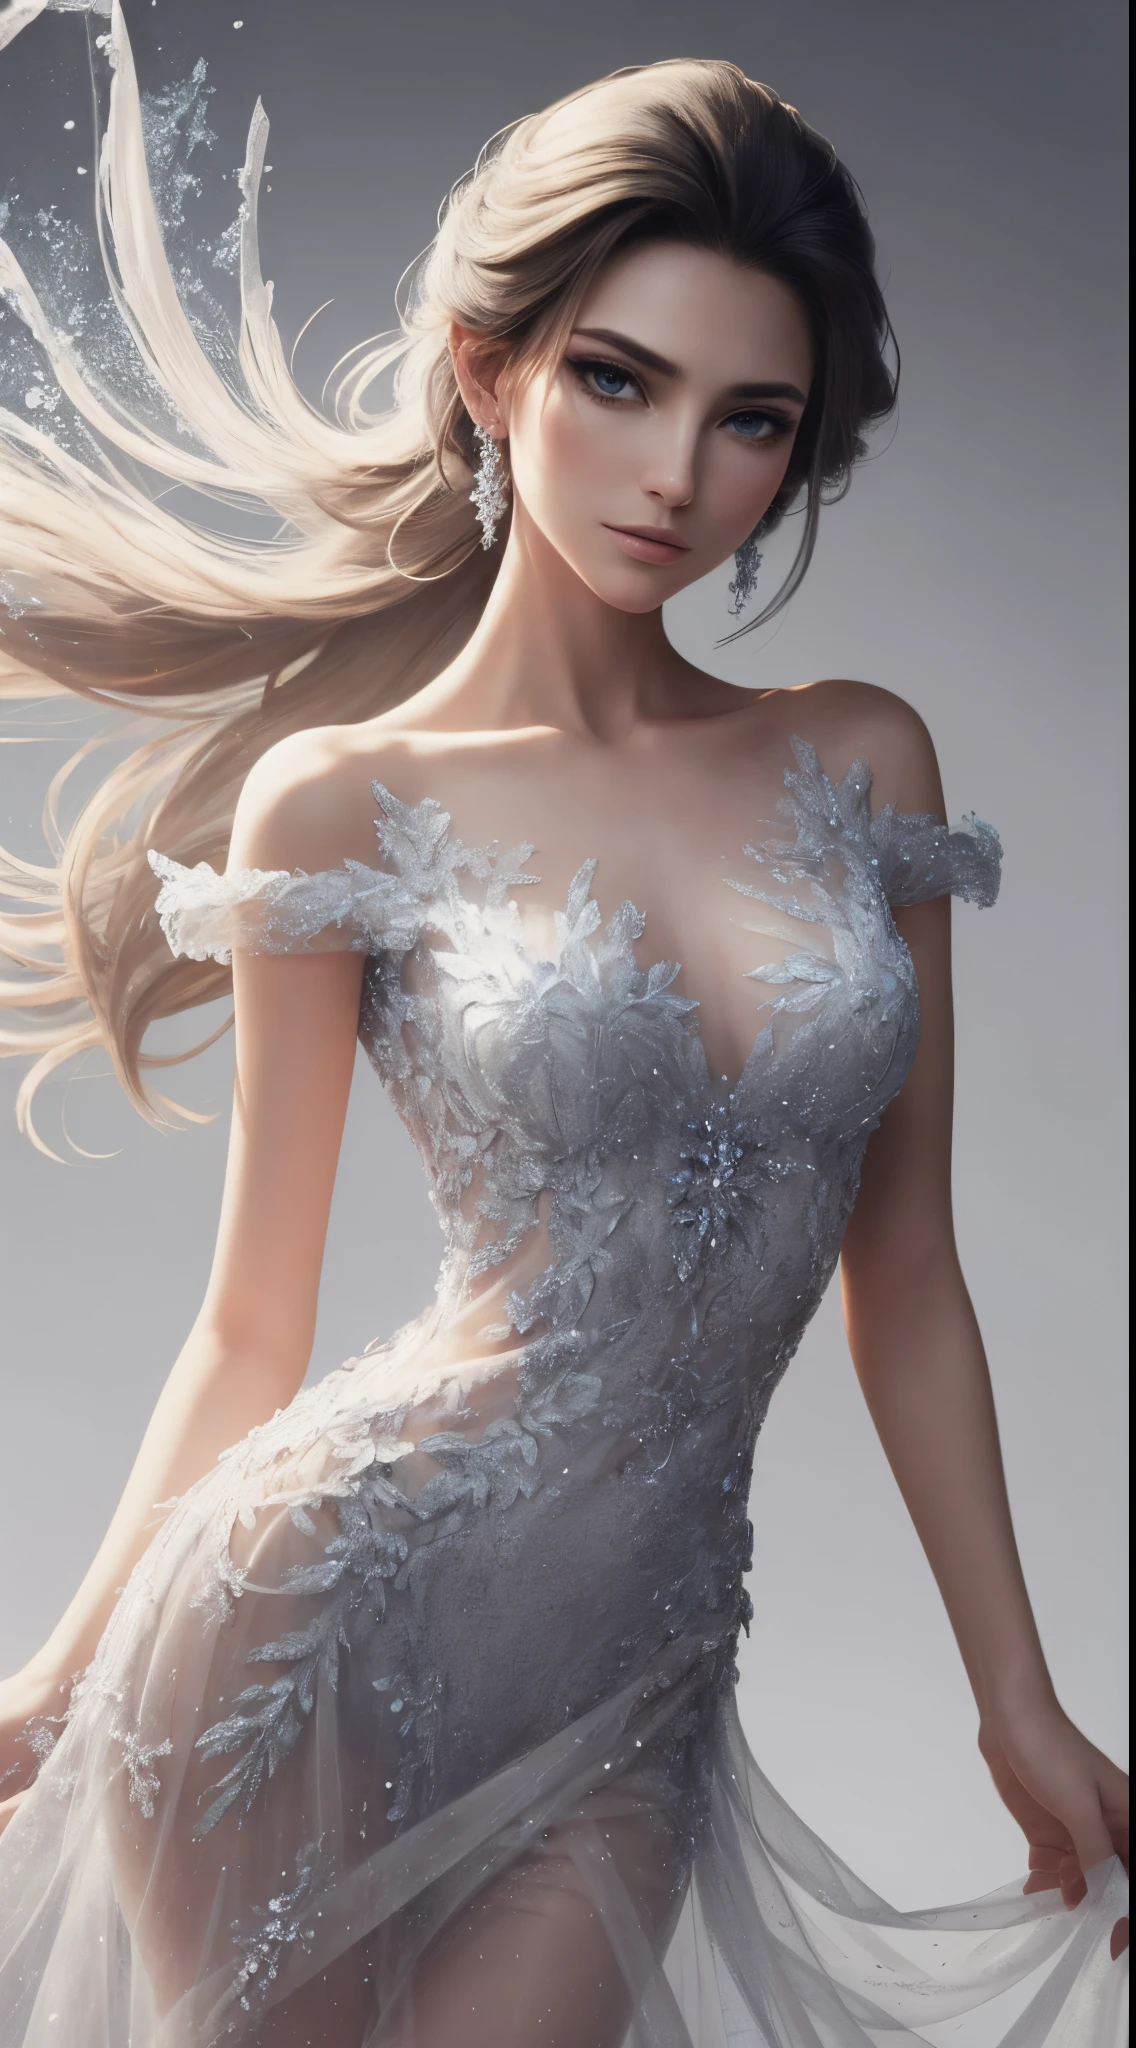 In a 映画風, envision Disney's Frozen エルサ as a beautiful model donned in a modern, ミディアムシアー, そしてミディアムショートドレス. ドレス, 複雑なディテールが施された, 現代的なエレガンスを醸し出す, 半透明の質感が魅惑的なタッチを加えます.
映画風,  ファッションモデルの写真撮影, white background for model エルサ, アナと雪の女王のアイスチェストショートドレスとファッションTシャツ , モダンなTシャツ, ジーンズエルザ, , Show me  Frozen エルサ in a new modern Jeans style, 美しいTシャツデザインファッション. While エルサ is a beautiful model, 背景を白で描き、感情の動きをほとんど持たない, 熱い感情,
手付かずの白い背景に設定, シーンはミニマルです, allowing エルサ's beauty and the dress's design to shine. 柔らかな照明が繊細な輝きを与えます, casting a gentle glow on the modern interpretation of エルサ.

エルサ, 彼女の象徴的なプラチナブロンドの髪と, 優雅に立つ, 品格と落ち着きを体現する. 彼女のメイクアップは、冷ややかなエレガンスをほのかに加えて、彼女の自然な特徴を強調しています。, そして彼女は静かな自信をにじませている. 感情の動きは微妙, 静かな決意の感覚を伝える, as エルサ embraces her role with understated grace.